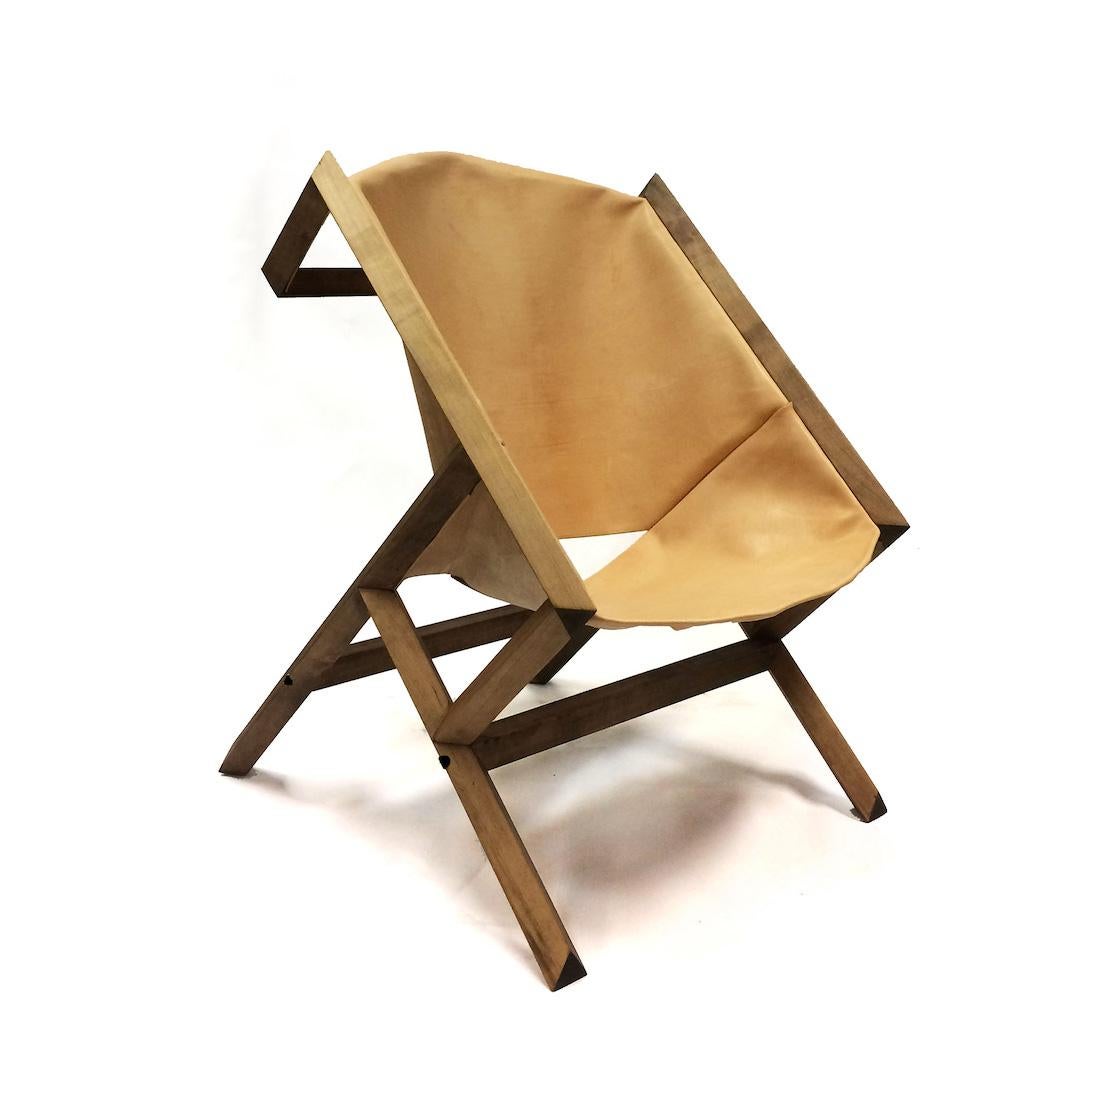 La chaise longue KANGURO a été lancée au salon Design/One en 2016, au pavillon argentin lors de la semaine du design de New York.
Son langage de conception et son processus de construction reposent sur la philosophie du 